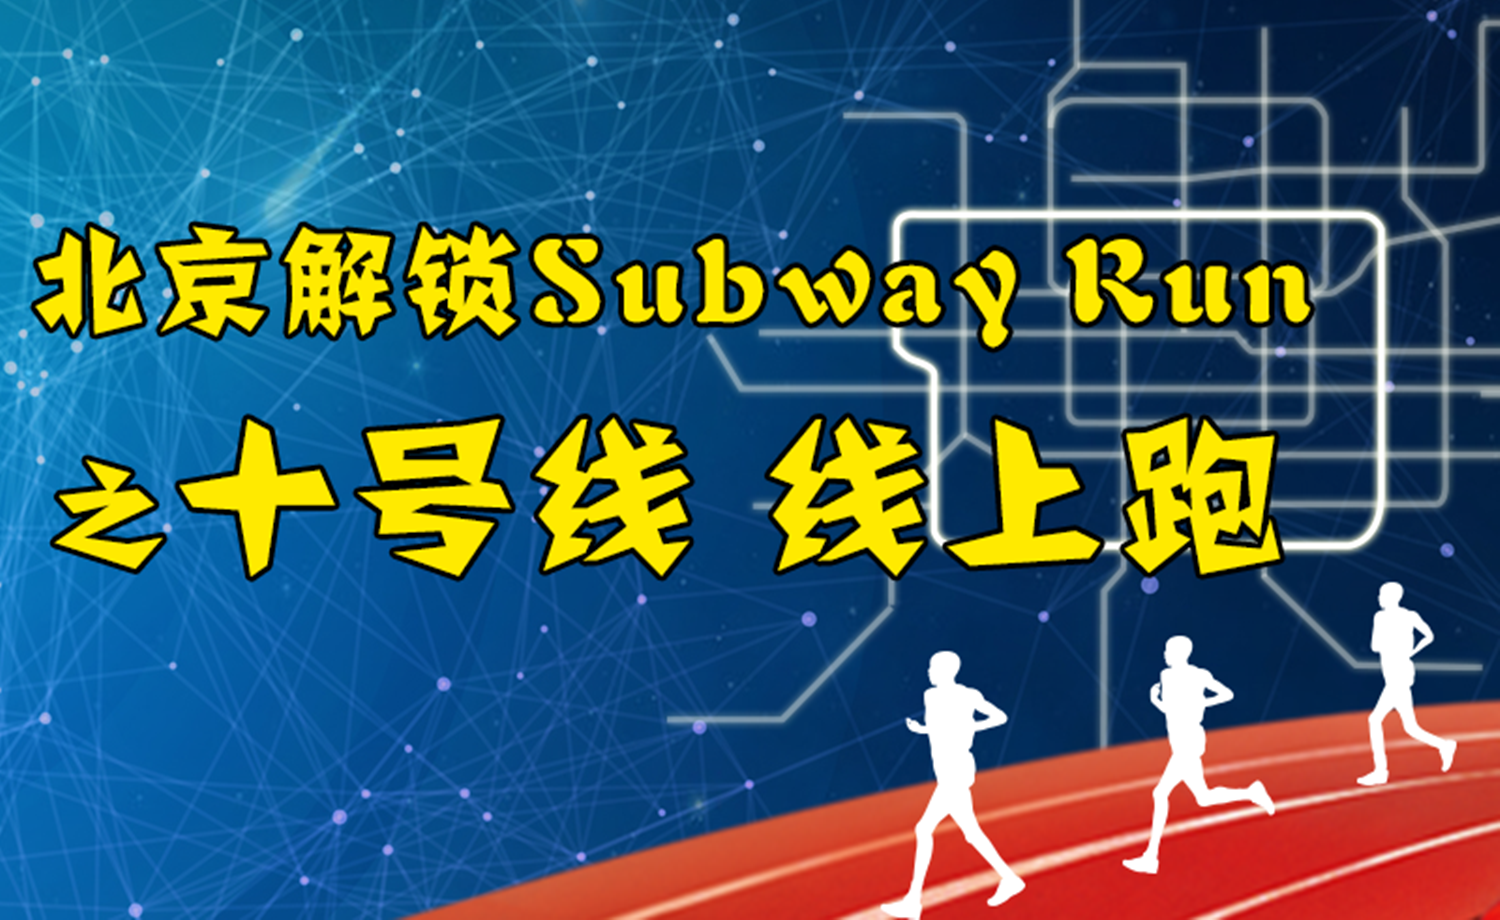 《北京解锁Subway Run》之十号线 线上活动